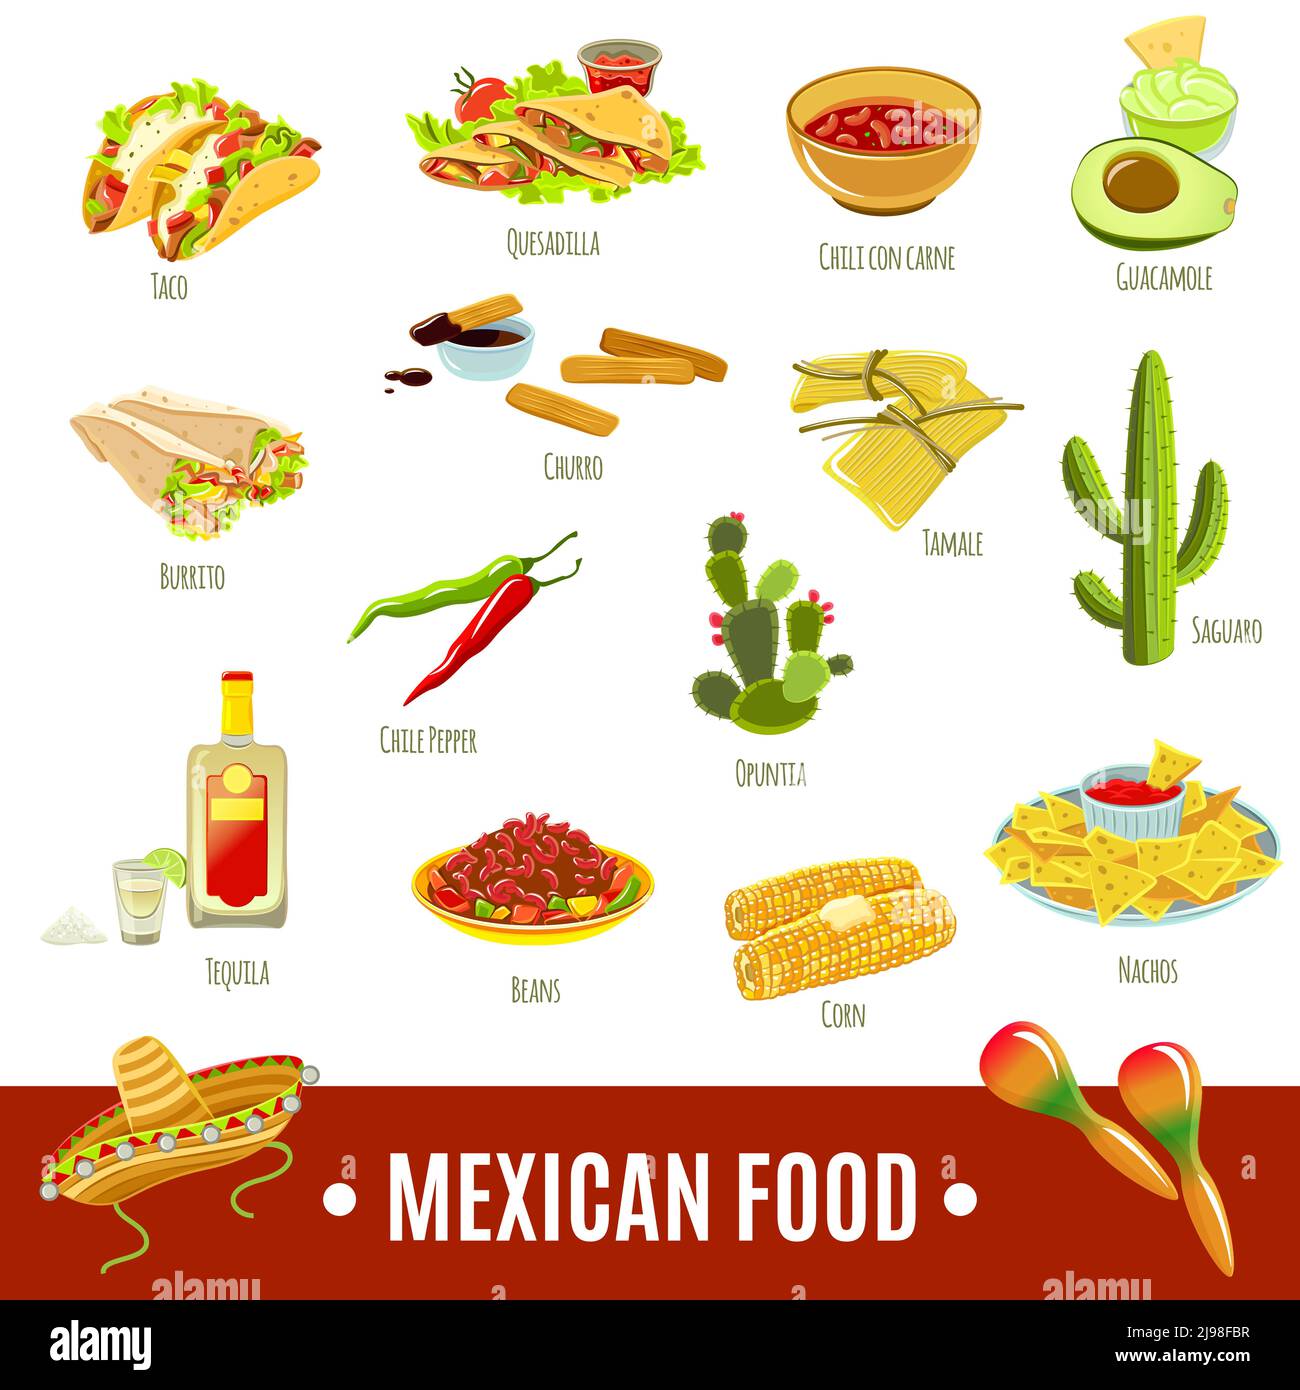 Bevanda gastronomica messicana di tradizione nazionale e presenta un colore luminoso piatto immagine vettoriale isolata con set di icone Illustrazione Vettoriale